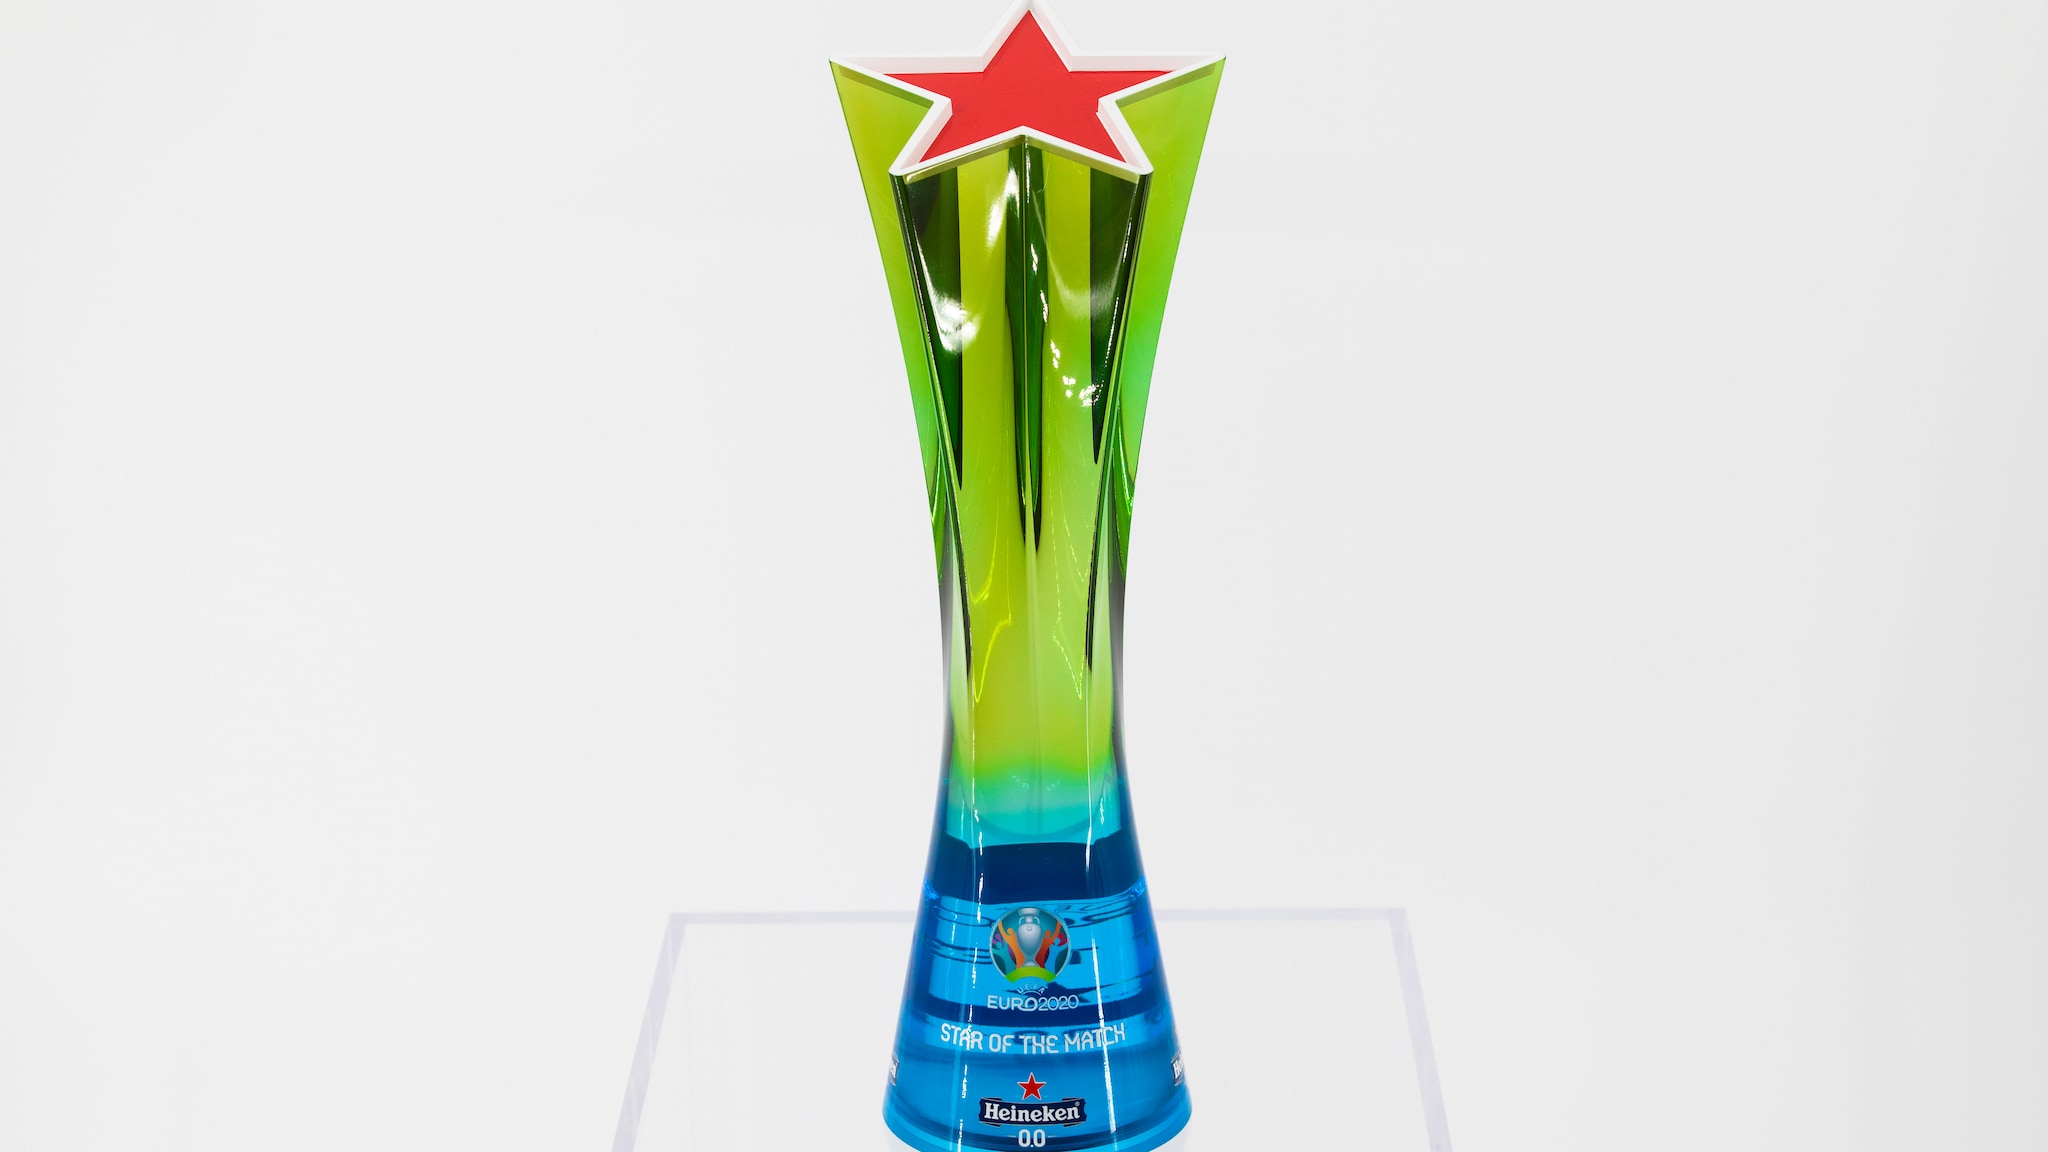 heineken star of the match trophy uefa euro 2020 1 - Որ ակումբի խաղացողներն են ամենաշատը ճանաչվել հանդիպման լավագույն խաղացող ԵՎՐՈ-ում